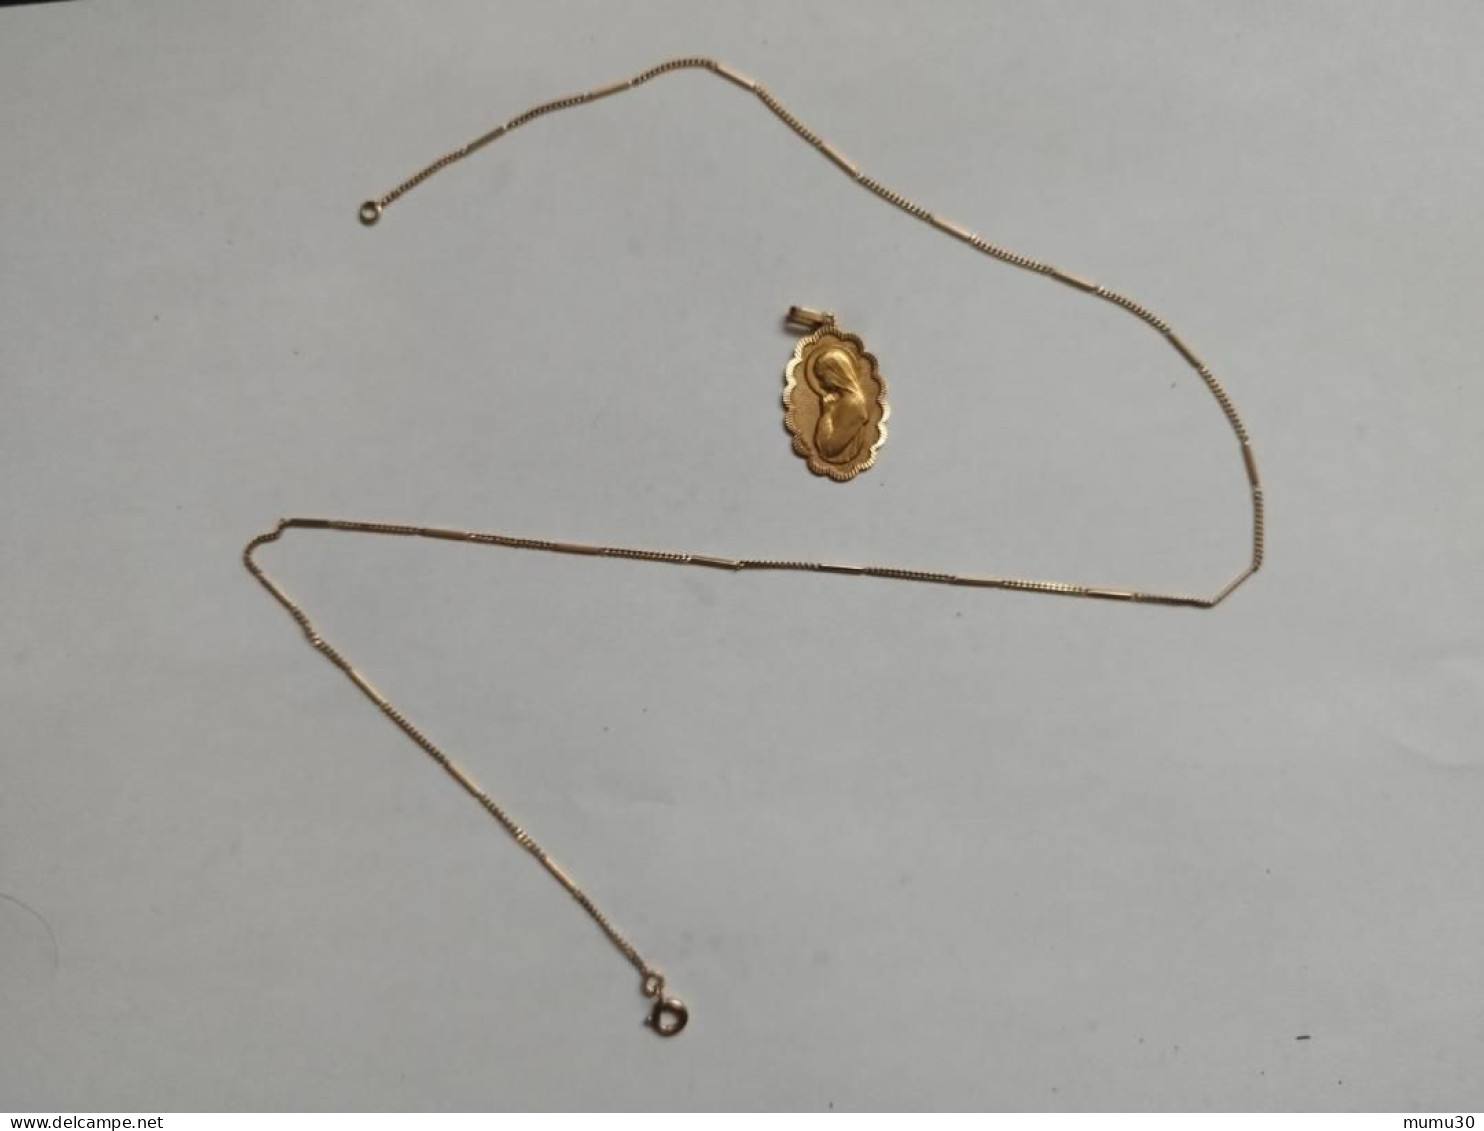 Magnifique médaille religieuse OR 750 - Années 70 "Sainte Marie" 6,1 grammes d'or avec la Chaîne Bijou